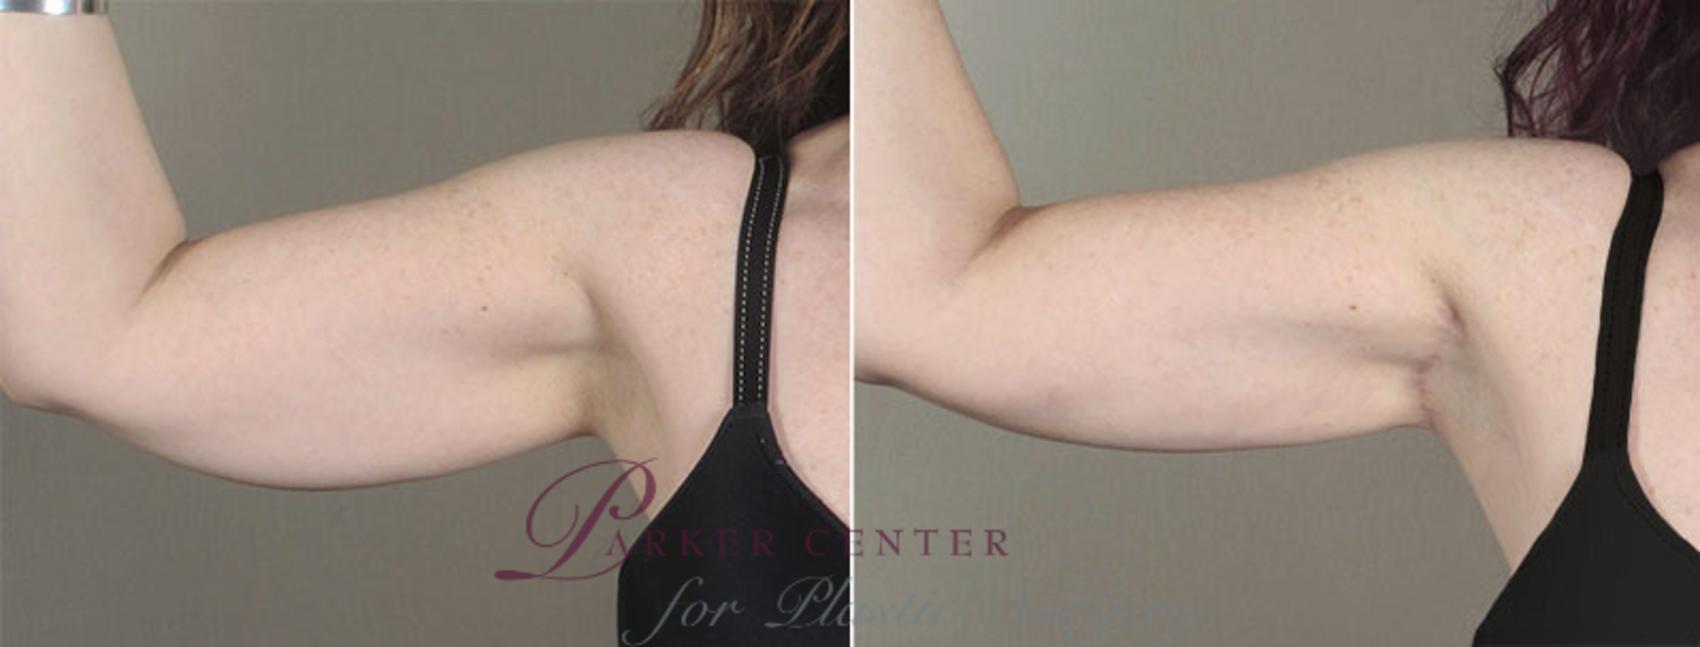 Upper Arm Rejuvenation Case 831 Before & After View #1 | Paramus, NJ | Parker Center for Plastic Surgery